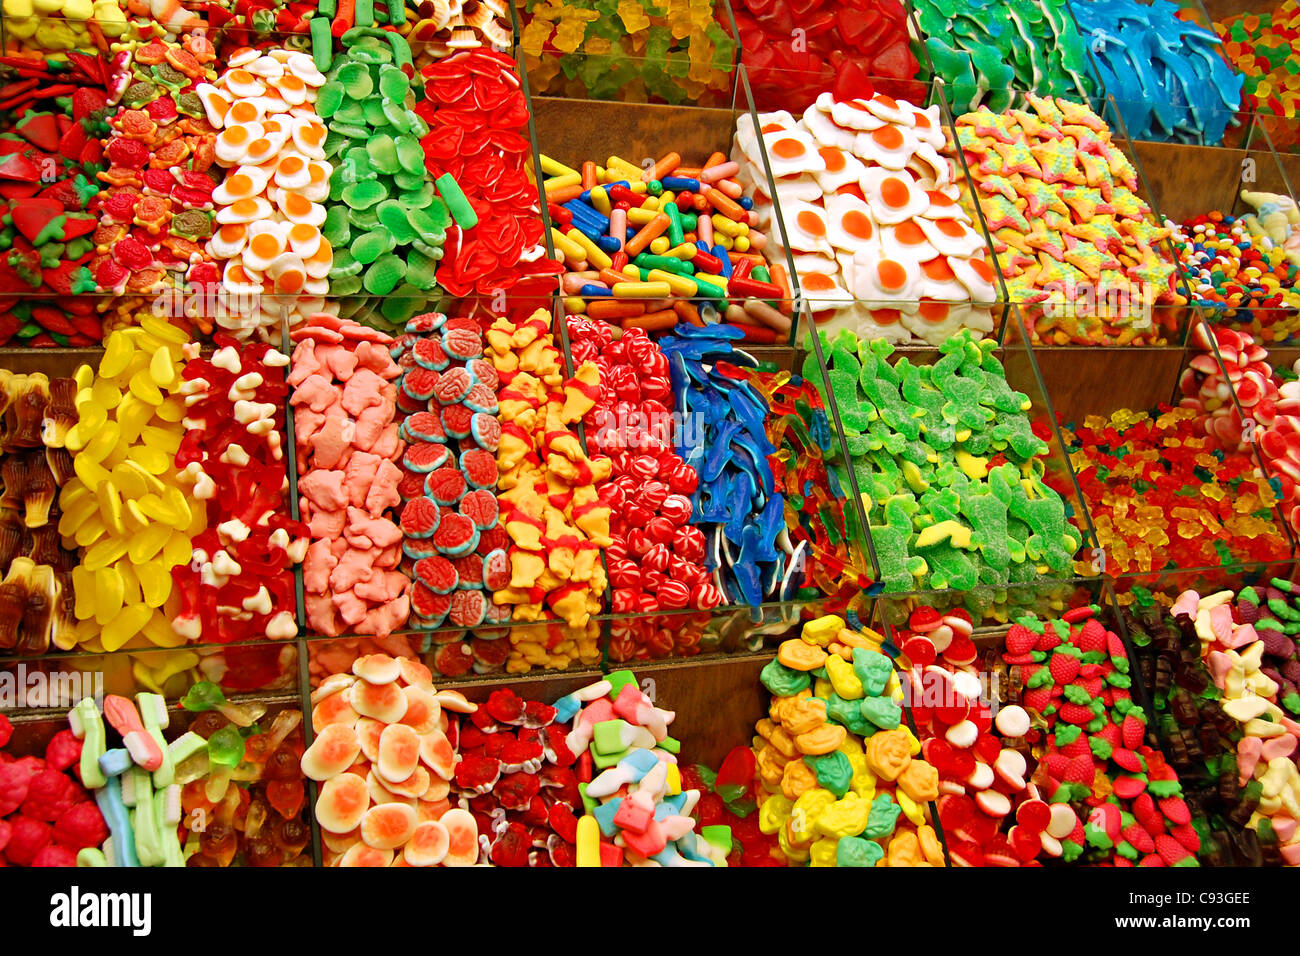 Candy, La Boqueria, Barcelona, Spain Stock Photo - Alamy